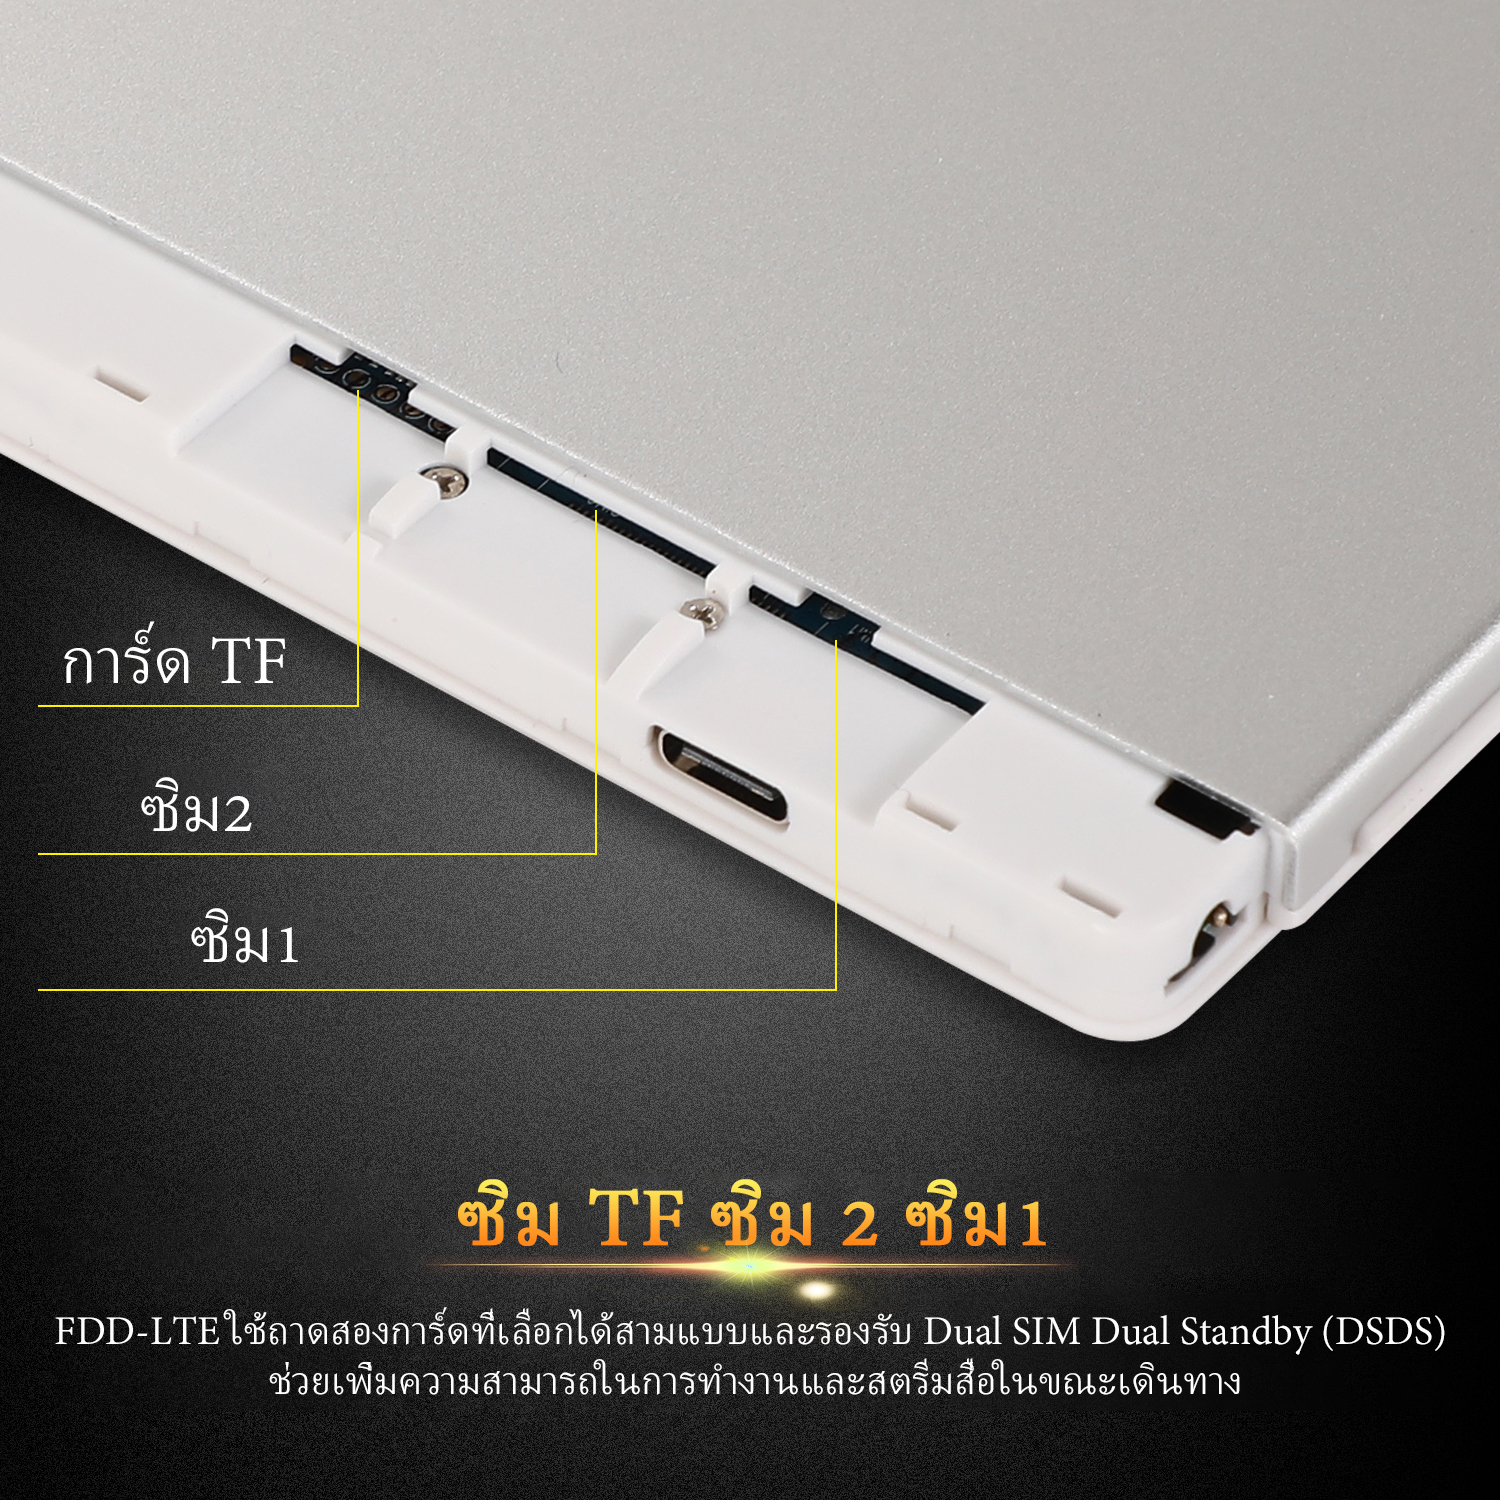 ข้อมูลประกอบของ Tablet Xiaomi Pad 5 แท็บเล็ต RAM12G ROM512G 10.1นิ้ว โทรได้ แท็บเล็ตถูกๆ แท็บเล็ตราคาถูก Andorid 10.0 Tablet จัดส่งฟรี รองรับภาษาไทย หน่วยประมวลผล 10-core แท็บเล็ตโทรได้ แท็บเล็ตสำหรับเล่นเกมราคาถูก แท็บเล็ตราคาถูกๆ แท็บเล็ตราคาถูกรุ่นล่าสุด ไอเเพ็ด